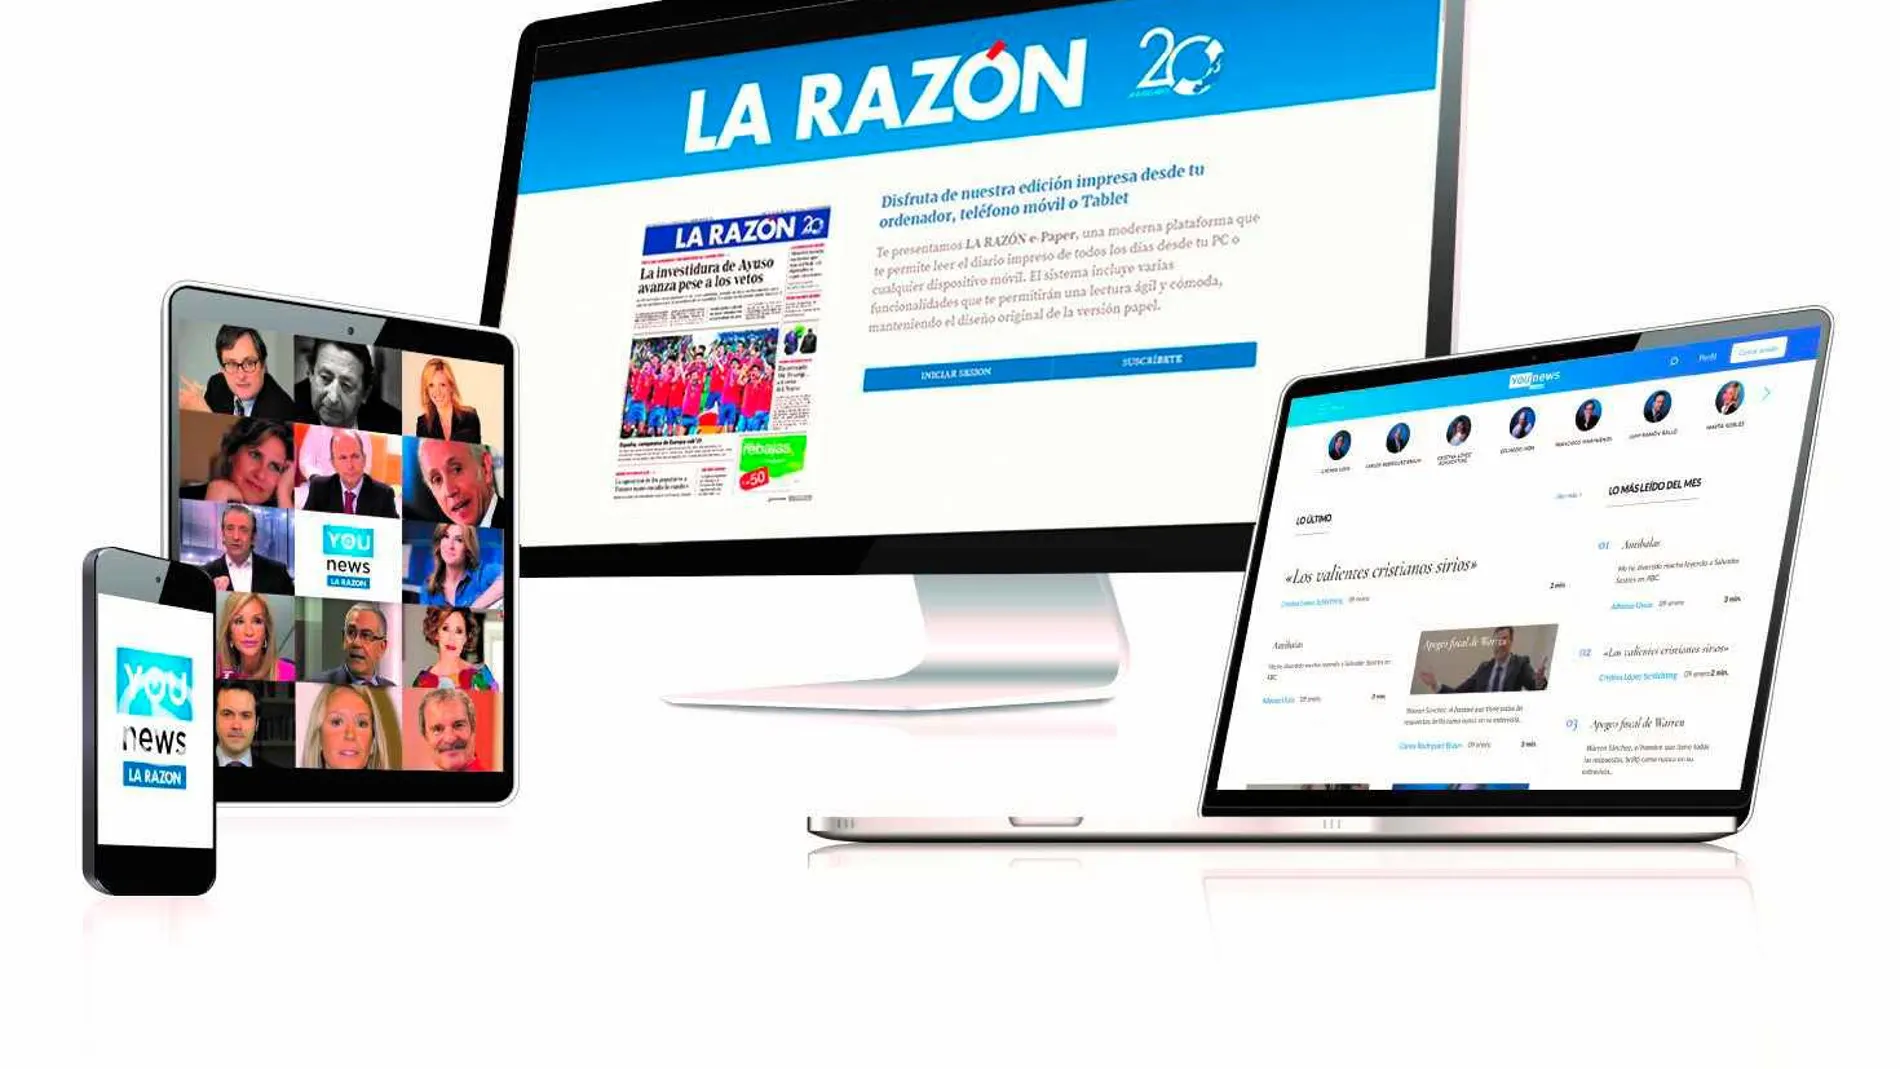 Disfrute de la edición impresa de LA RAZÓN desde su ordenador, tableta o móvil con LA RAZÓN e-Paper